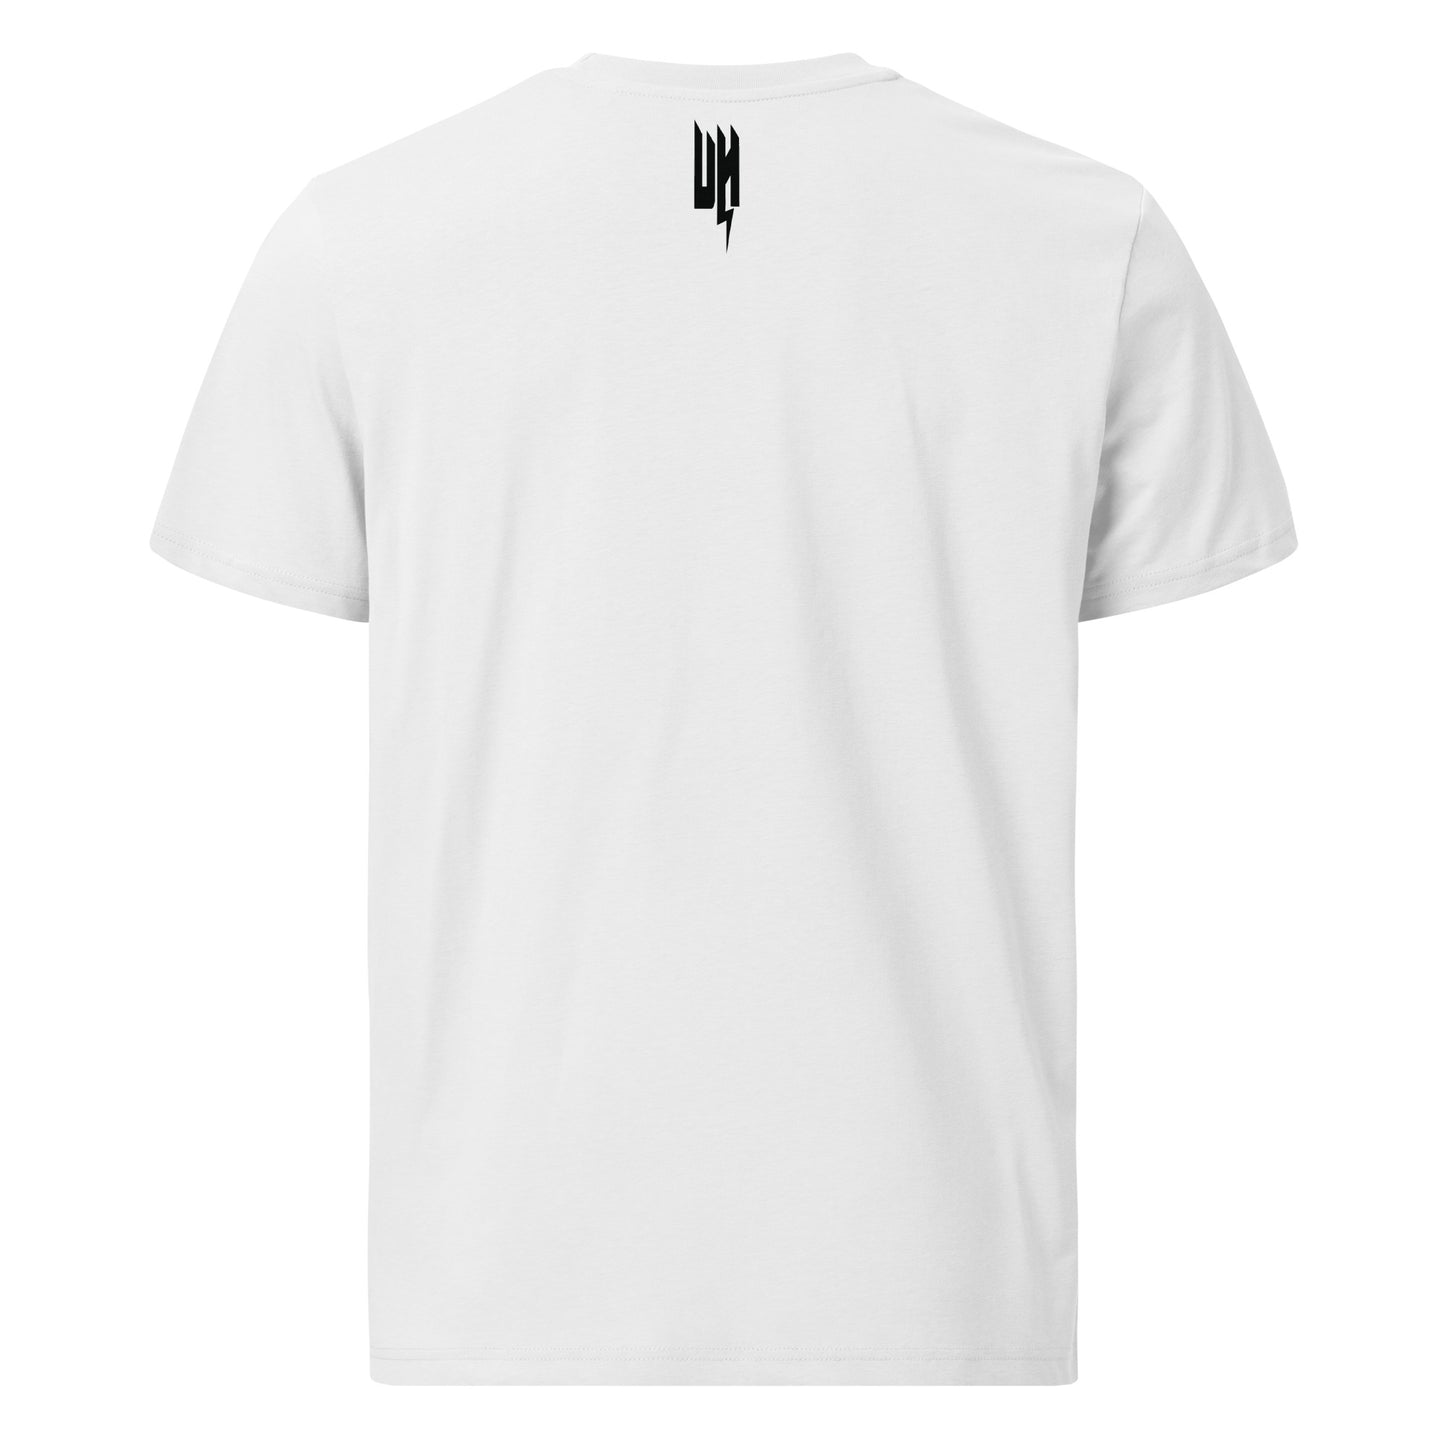 Ulli Hahn UK T-Shirt